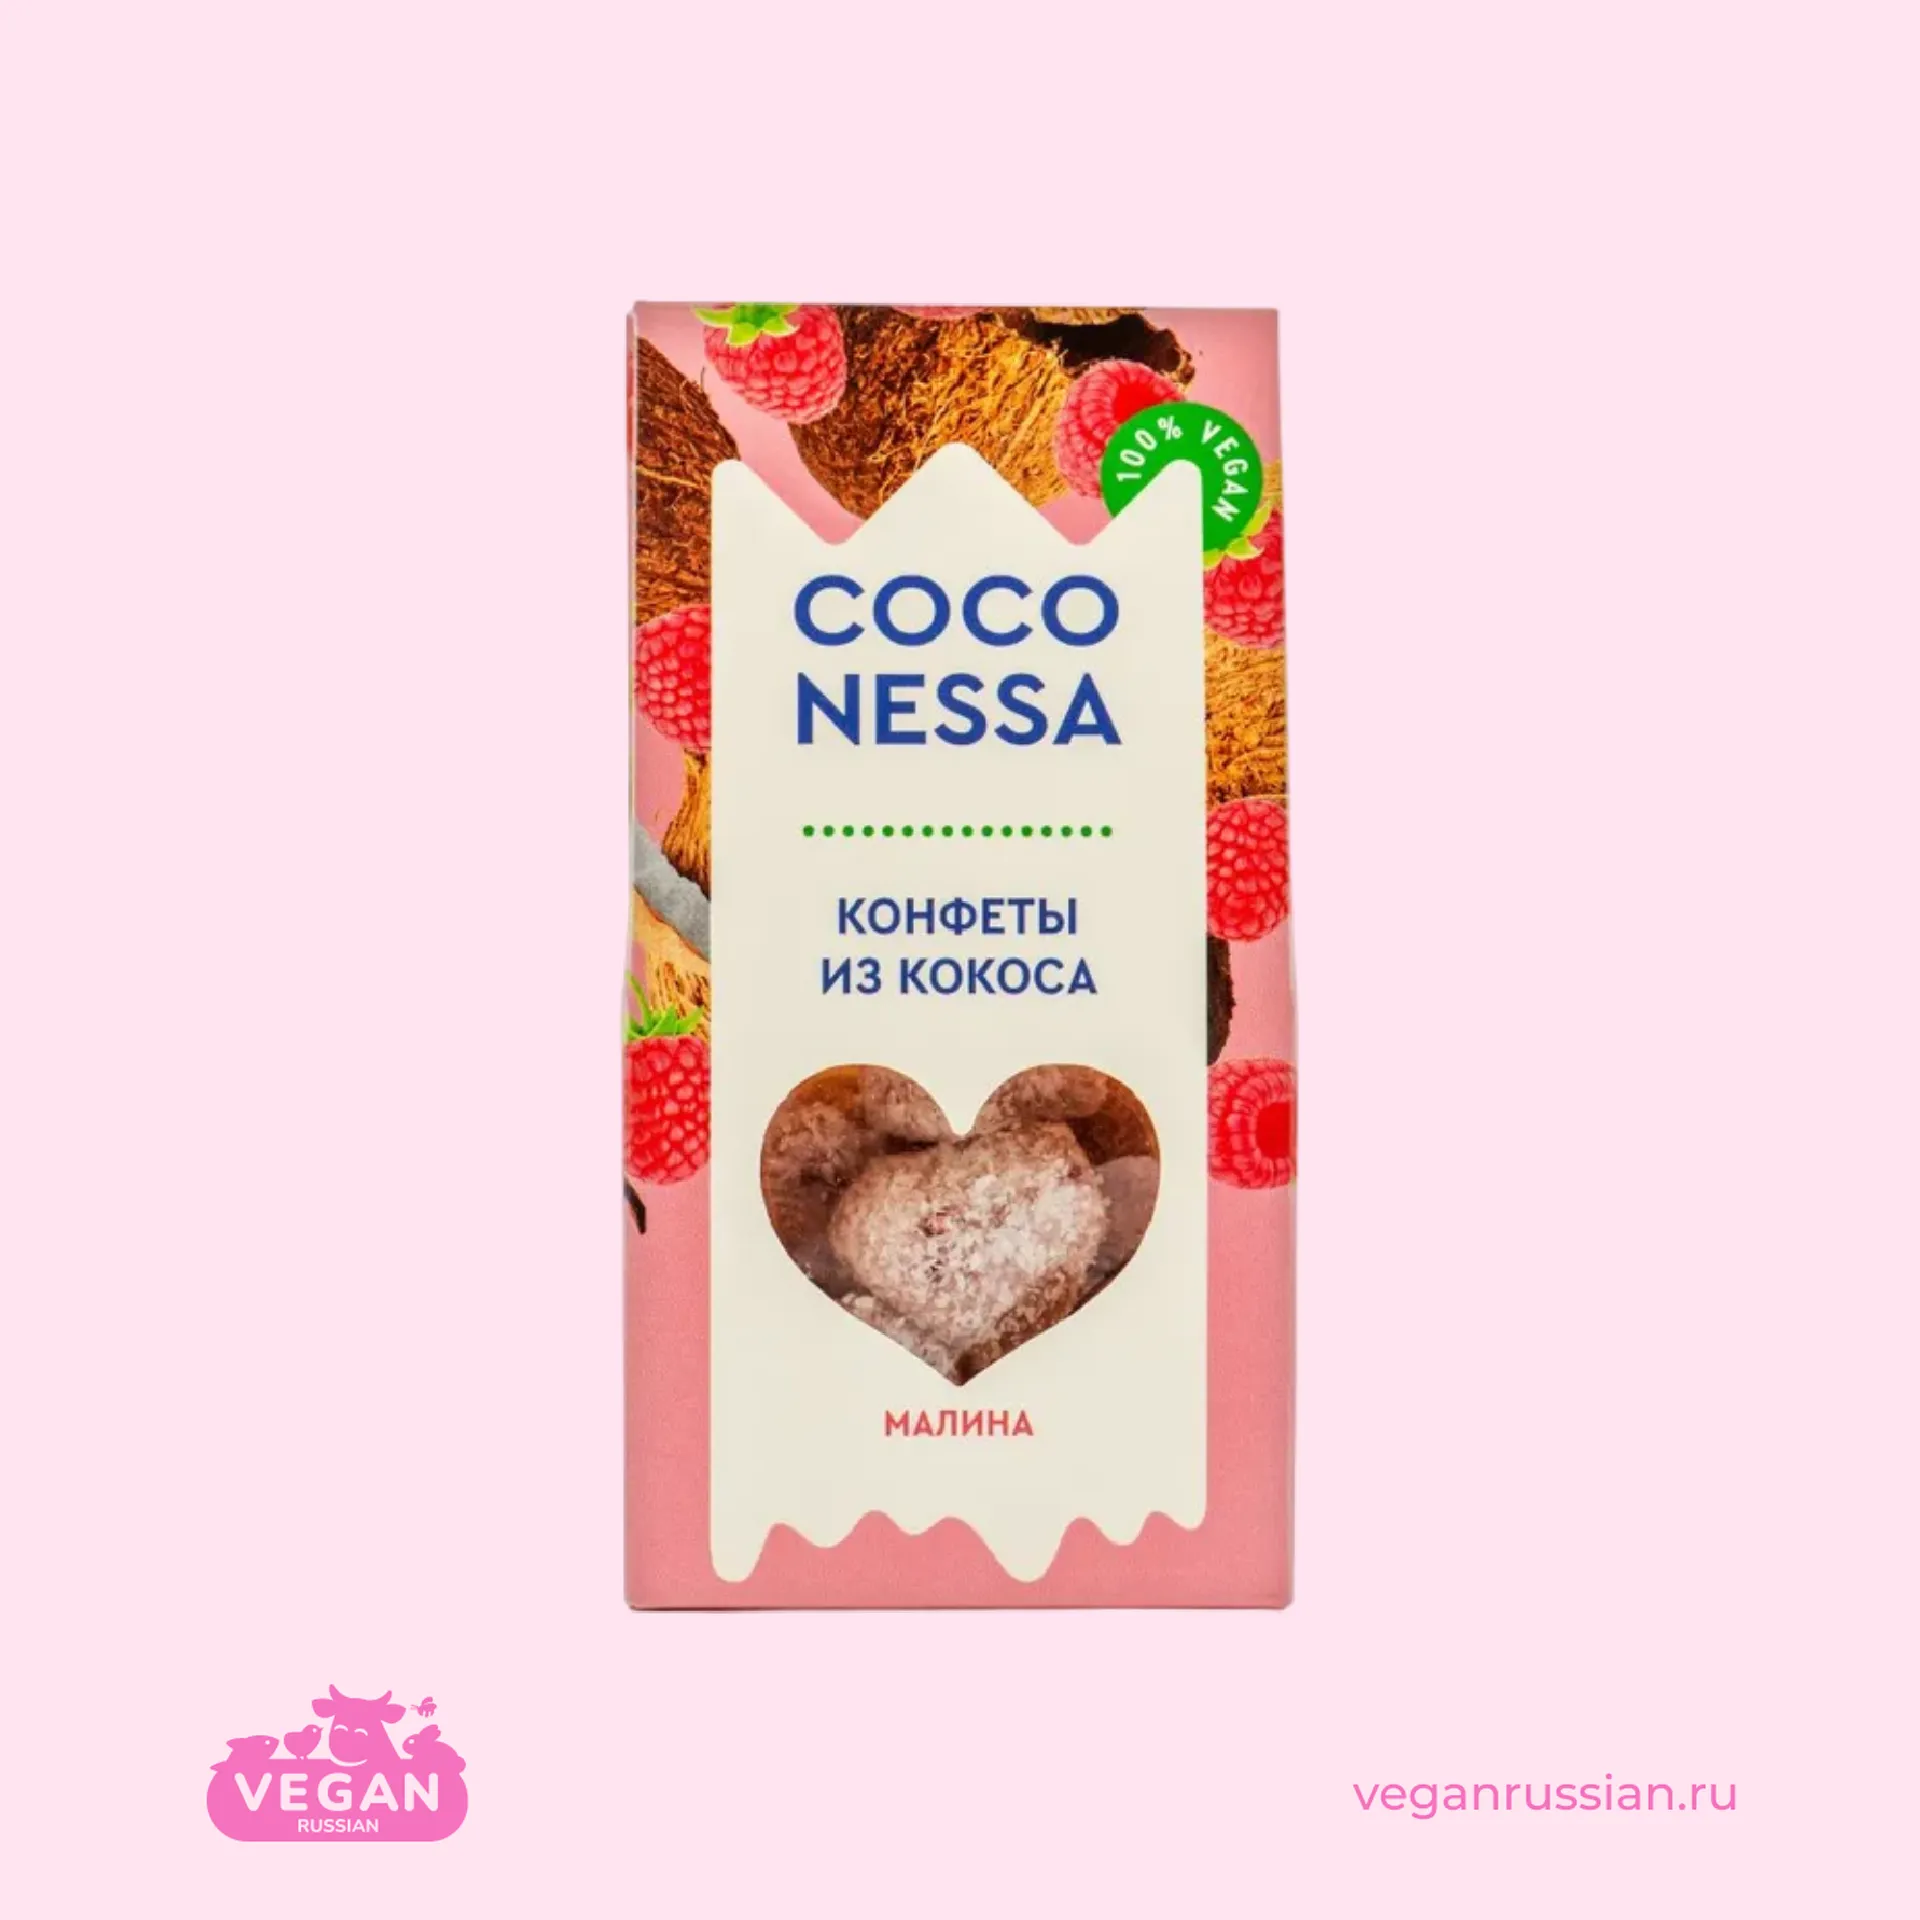 Конфеты кокосовые с малиной Coconessa 90 г